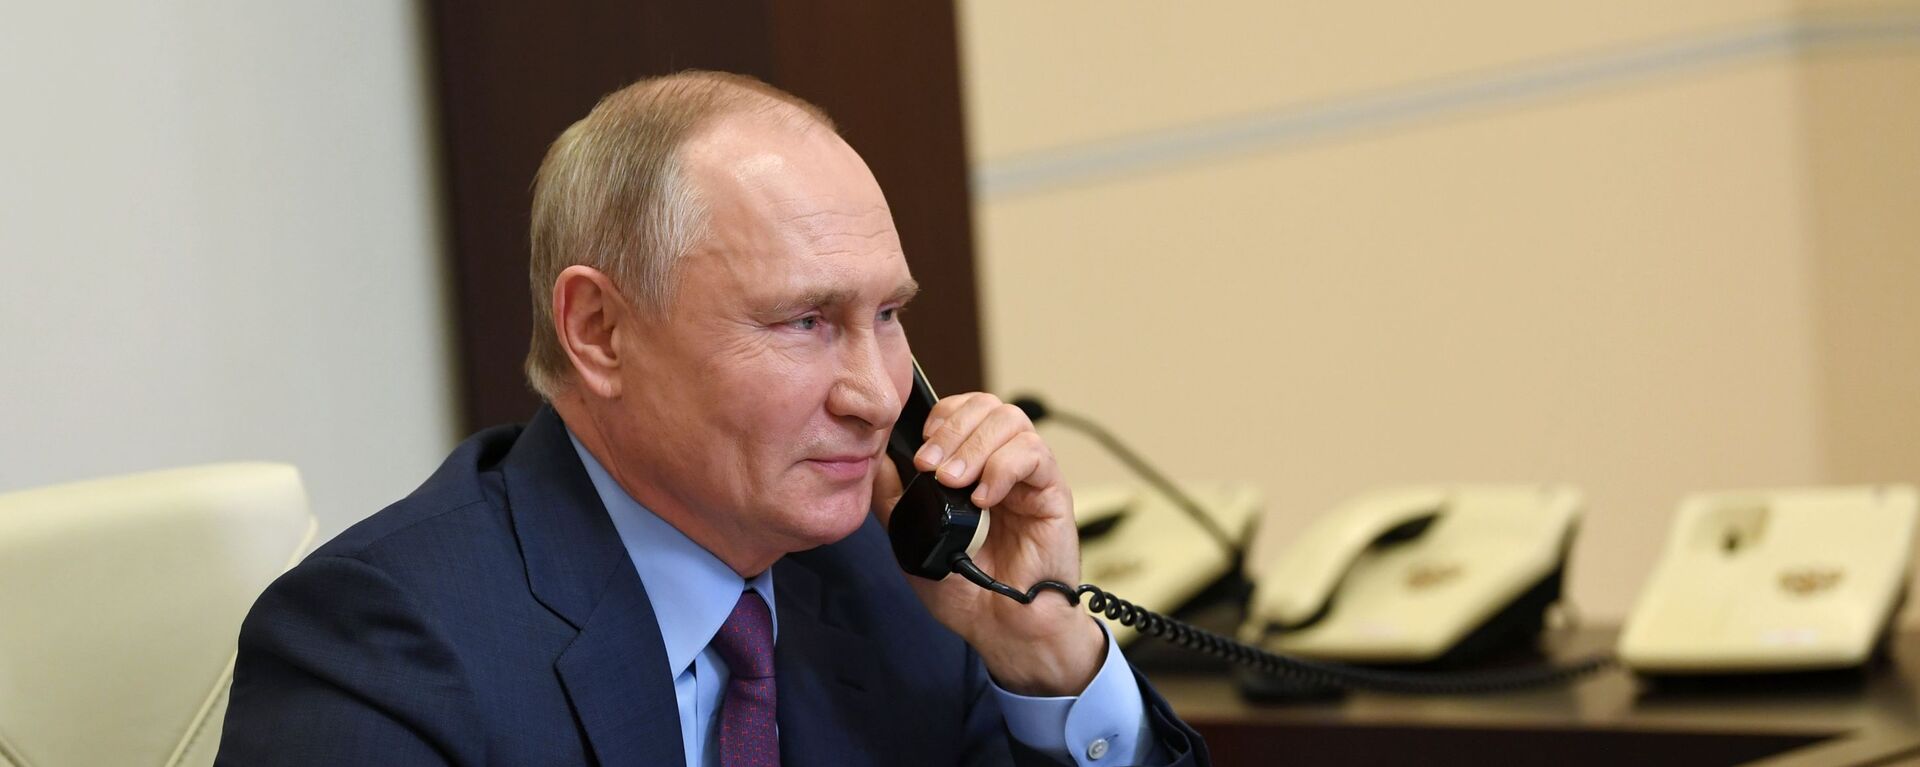 Vladímir Putin, presidente de Rusia, habla por teléfono con una veterana - Sputnik Mundo, 1920, 02.06.2021